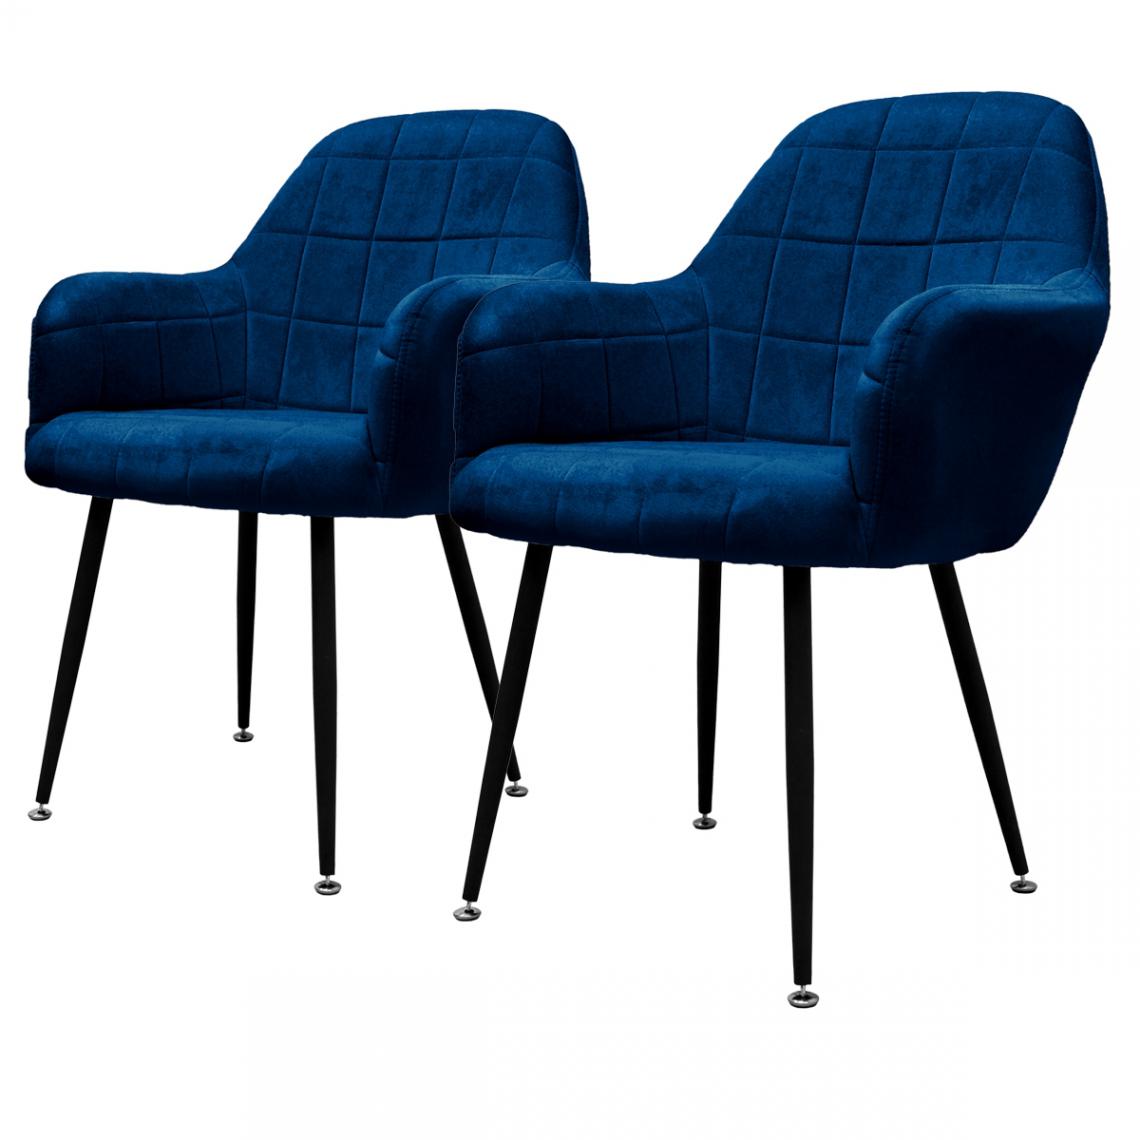 Ecd Germany - Lot de 2 chaise salle à manger aspect velours bleu foncé rétro réglable hauteur - Chaises